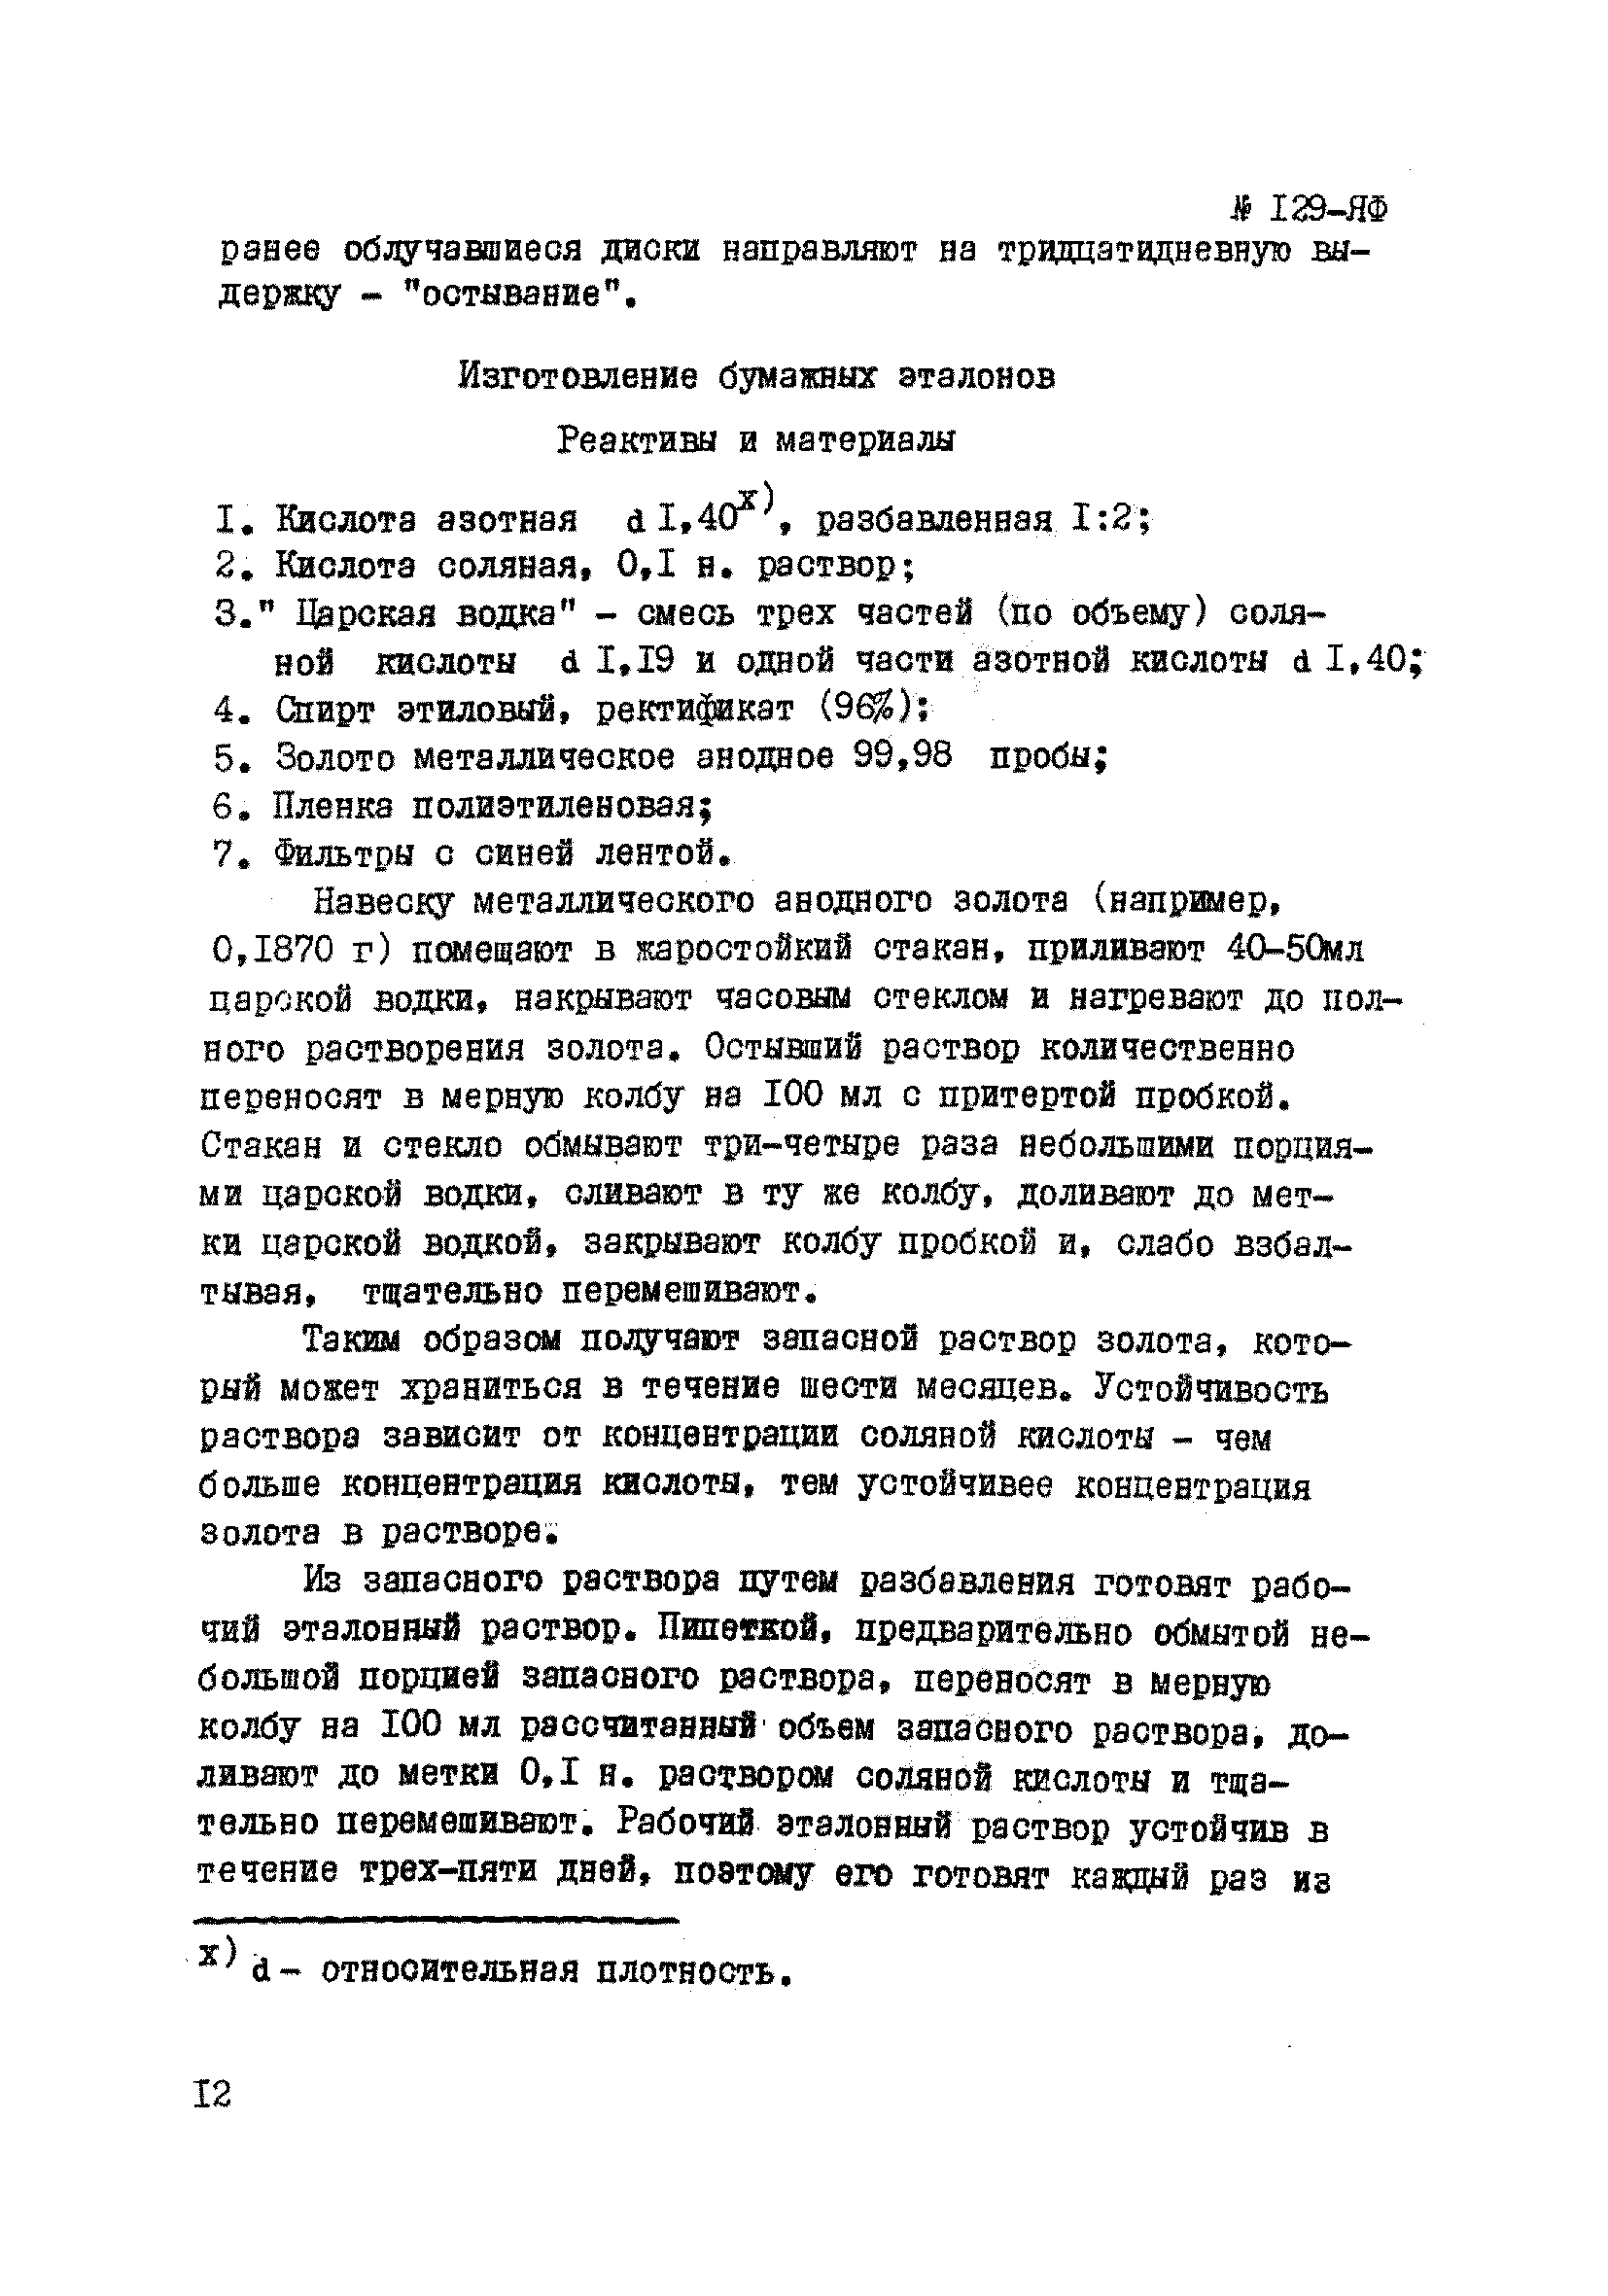 Инструкция НСАМ 129-ЯФ